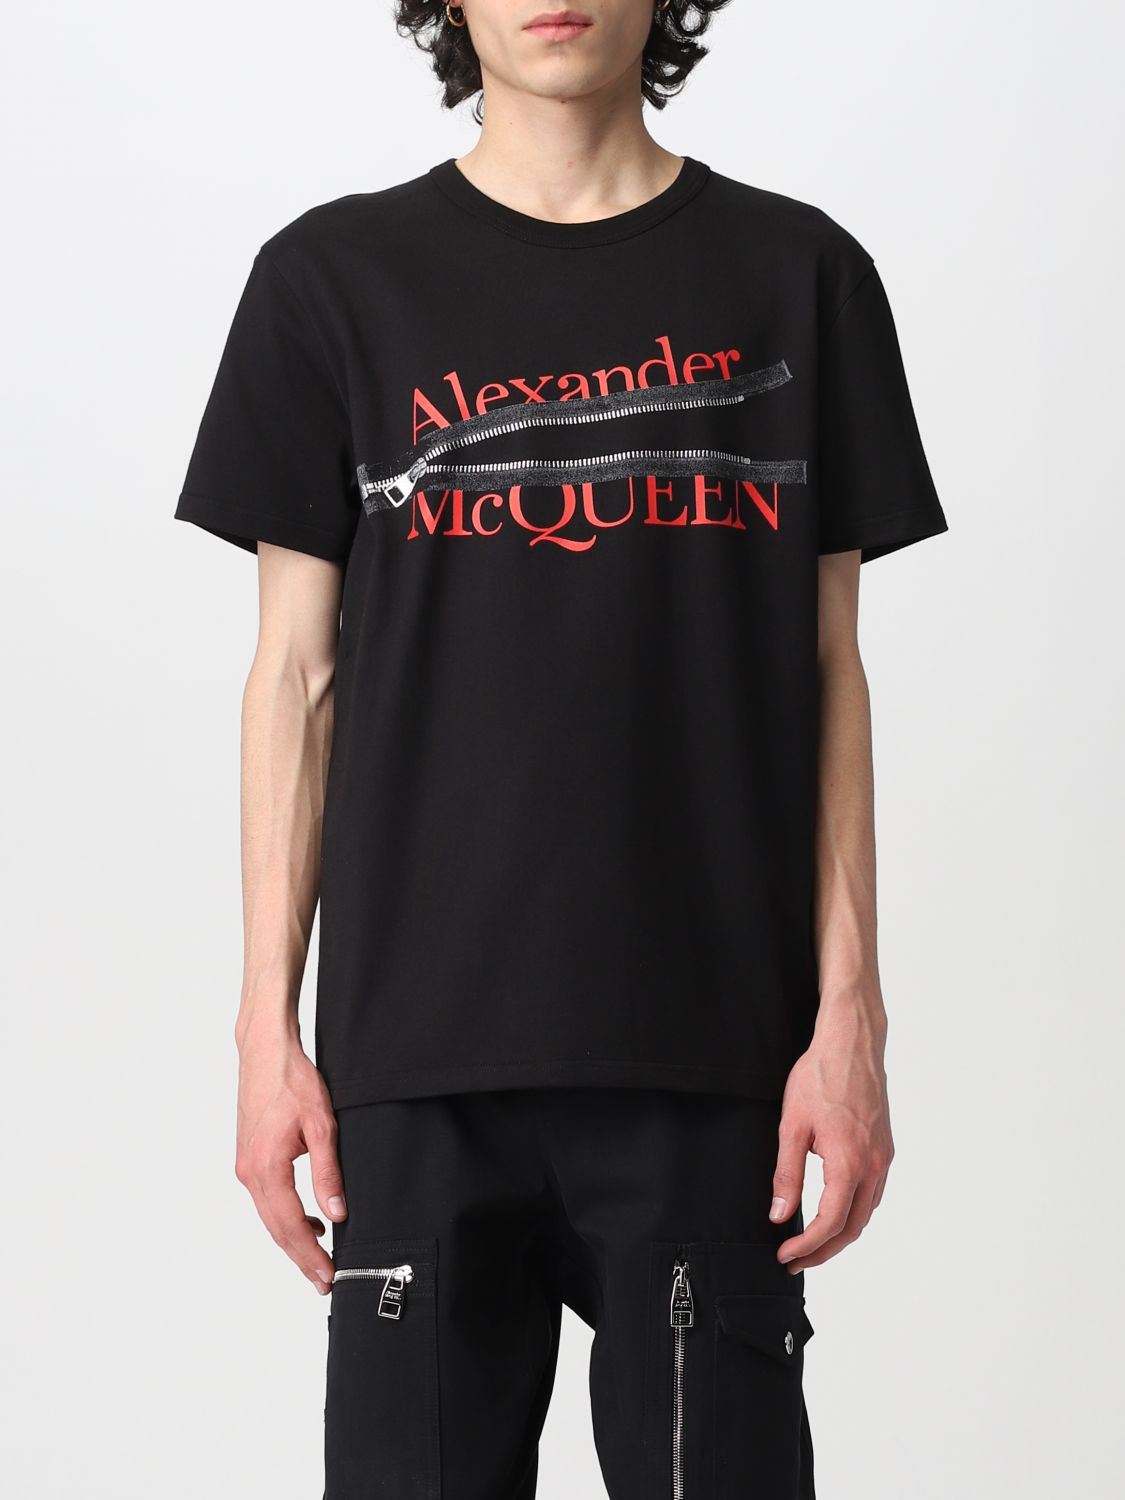 Alexander McQueen t-shirt with zipper